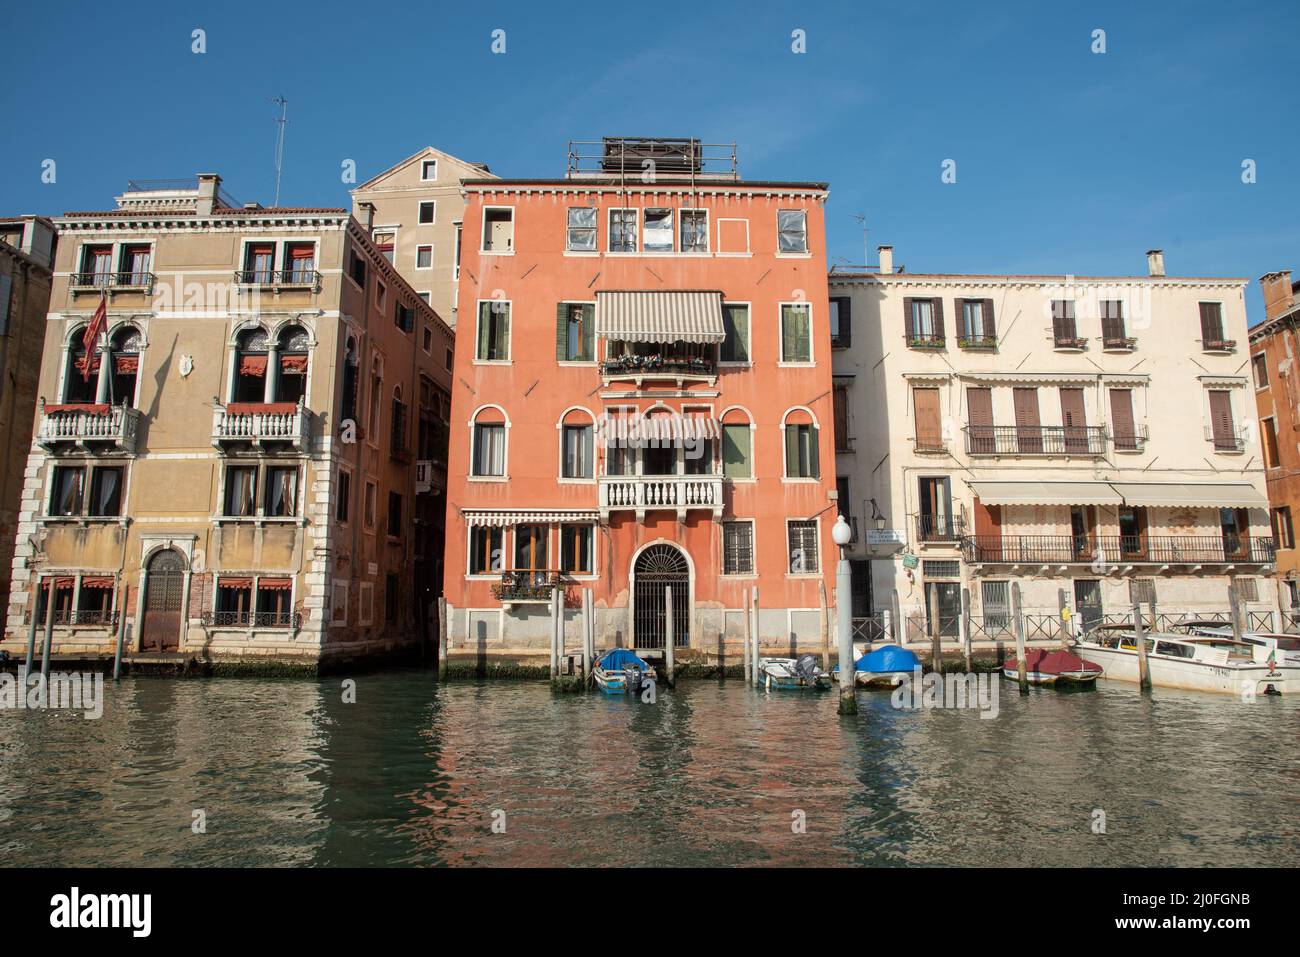 Venedig Stadtbild mit Grand Canal Wasserstraße, venezianische Architektur Boot Segeln Canal Grande. Italien Stockfoto